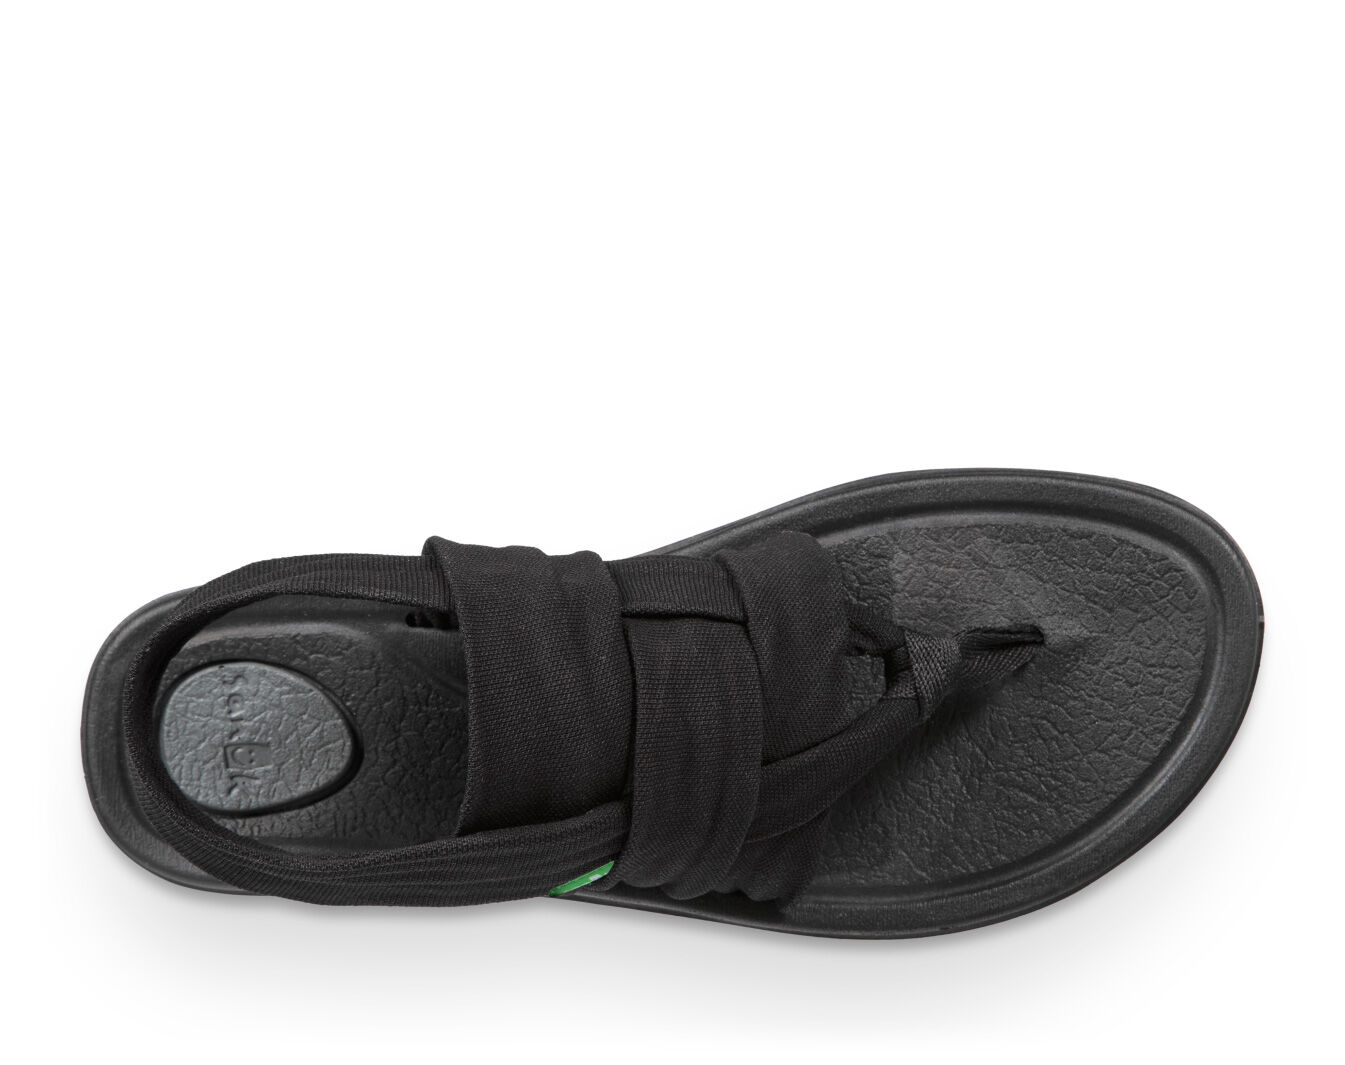 Sanuk Women's Yoga Sling 3 Black Sandals Yoga Mat 1099405 Size 5